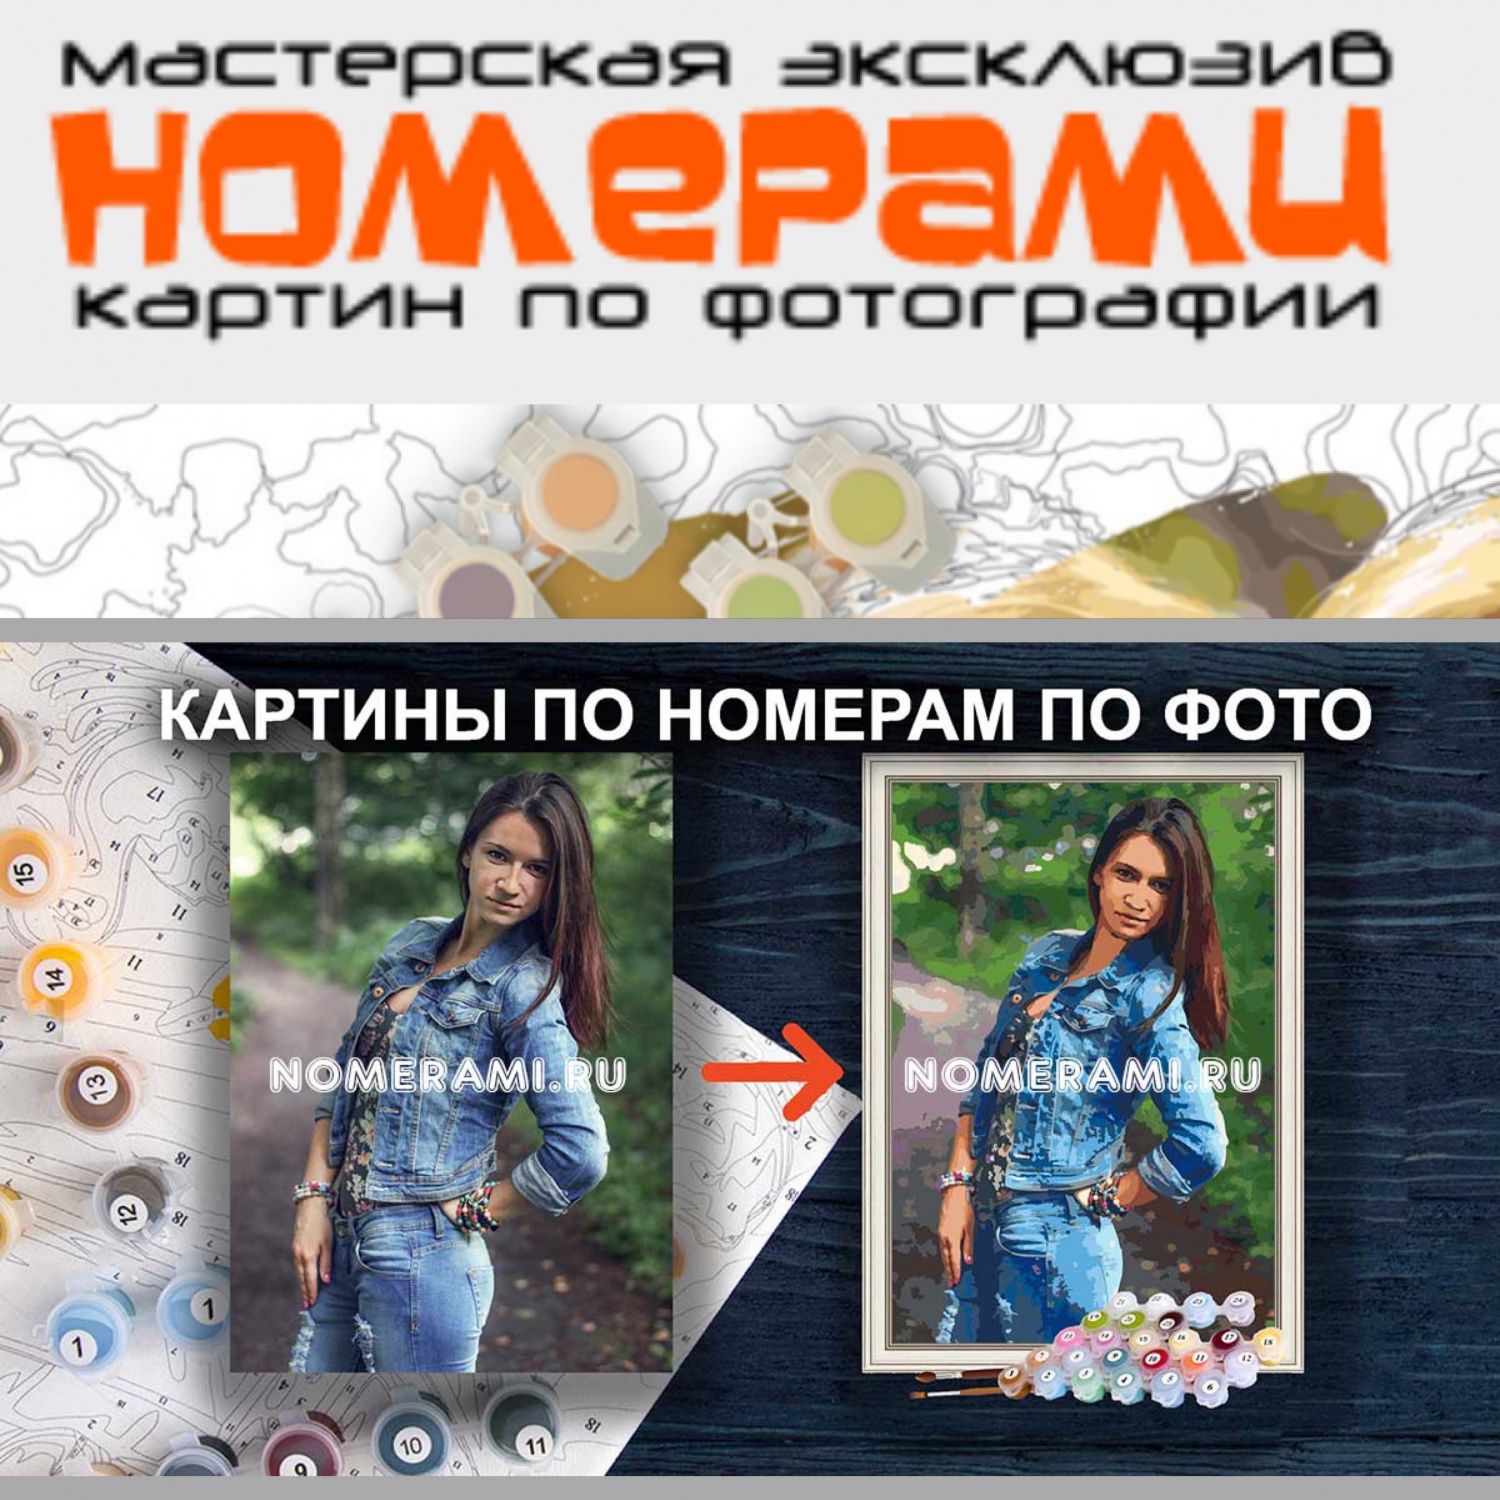 Сайт Nomerami.ru - картины по номерам по фото на заказ фото